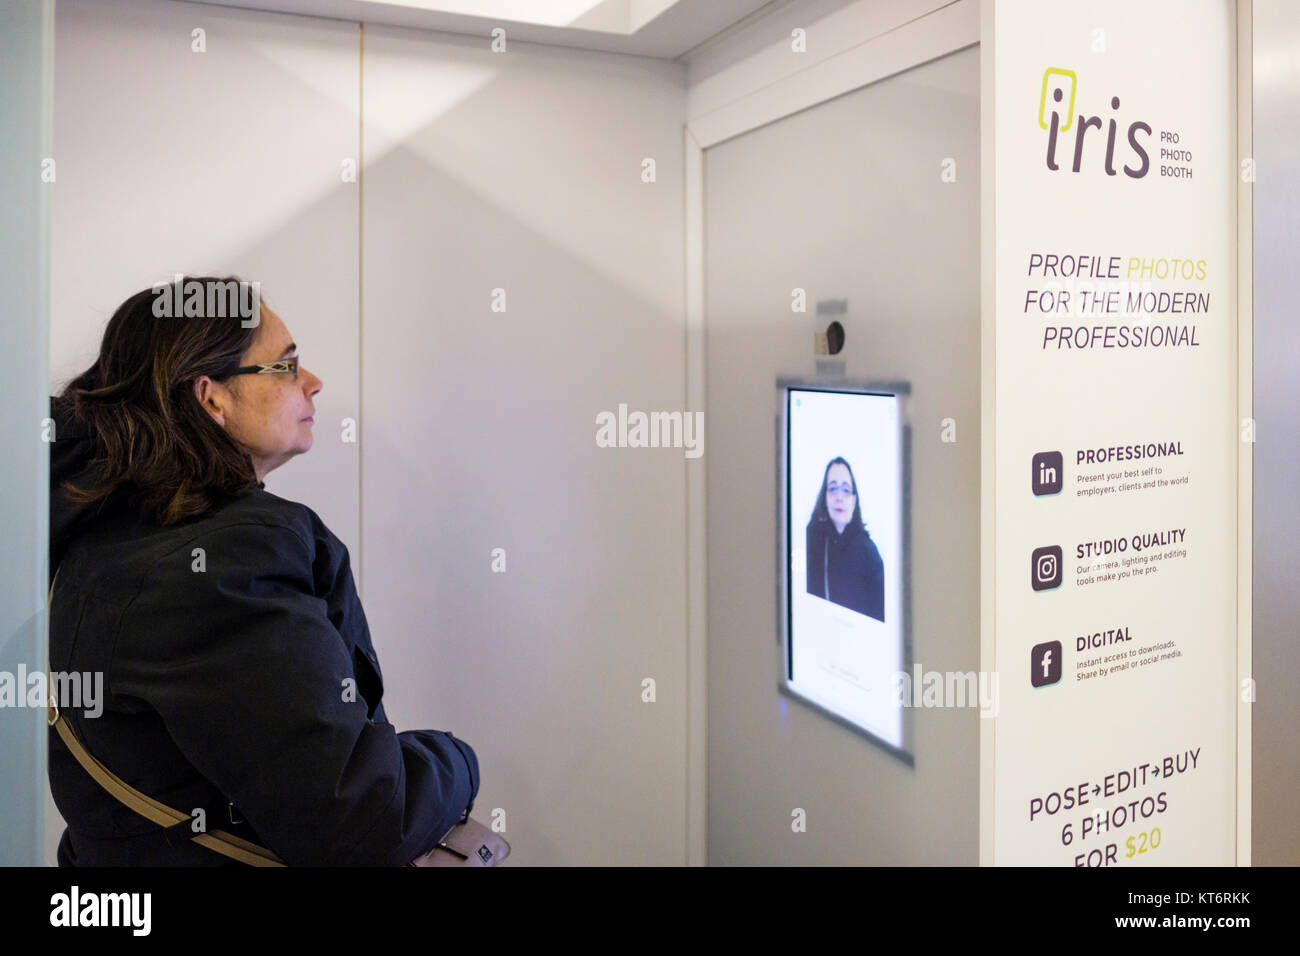 Iris Pro Photo Booth macht high-end kopfschüsse von Menschen bestellt und digital bearbeitet, Ryerson University - Ted Rogers Schule für Management, Toronto Stockfoto